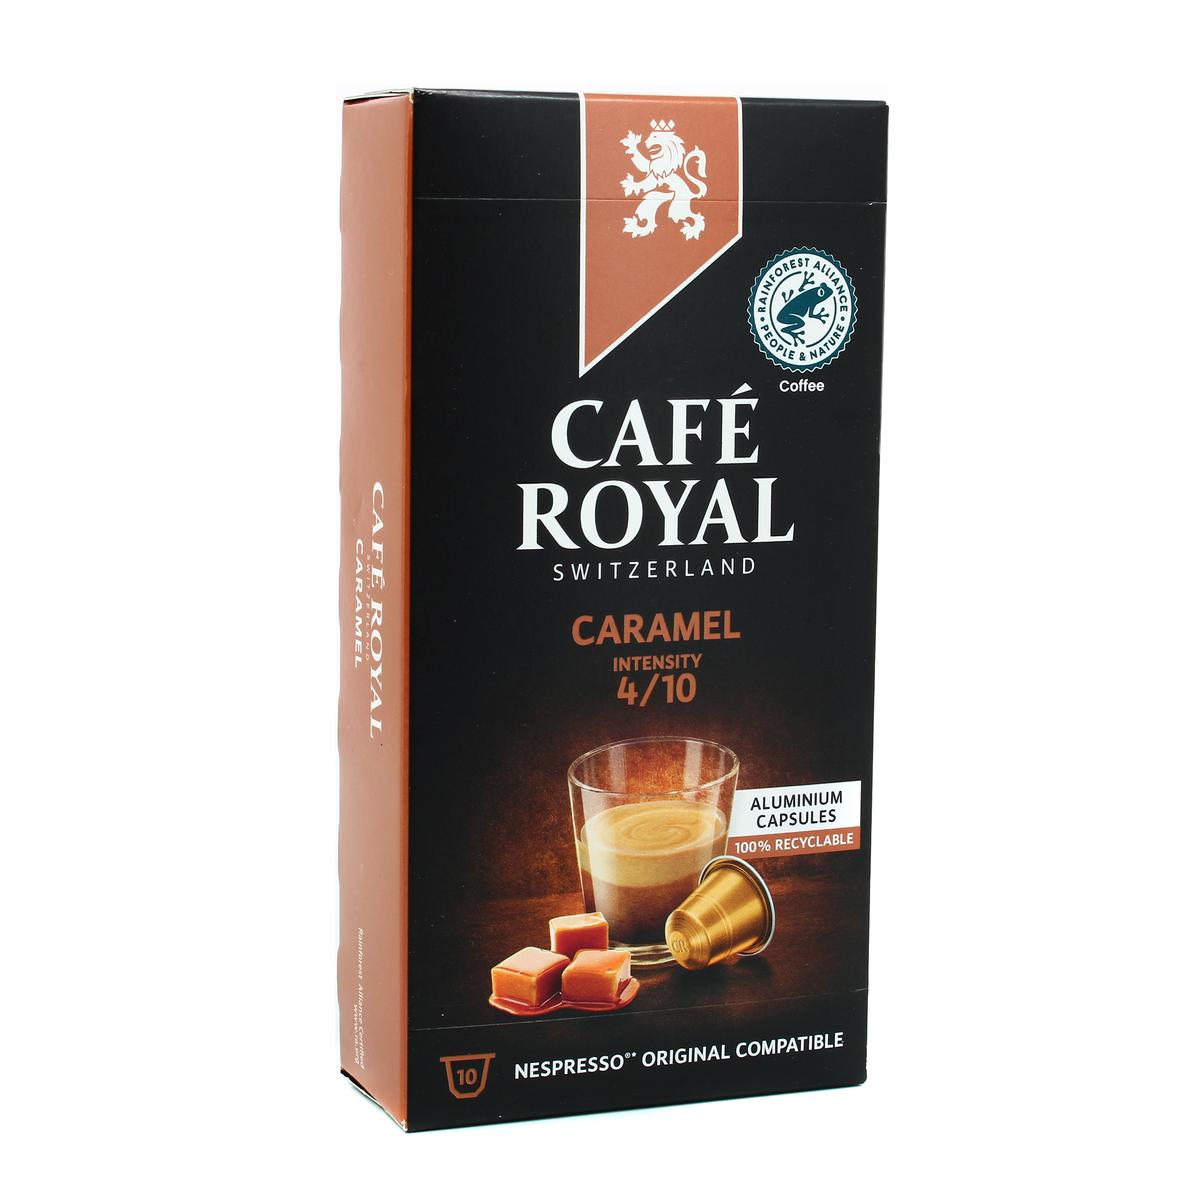 Café Royal Espresso - 36 Capsules pour Nespresso à 8,49 €